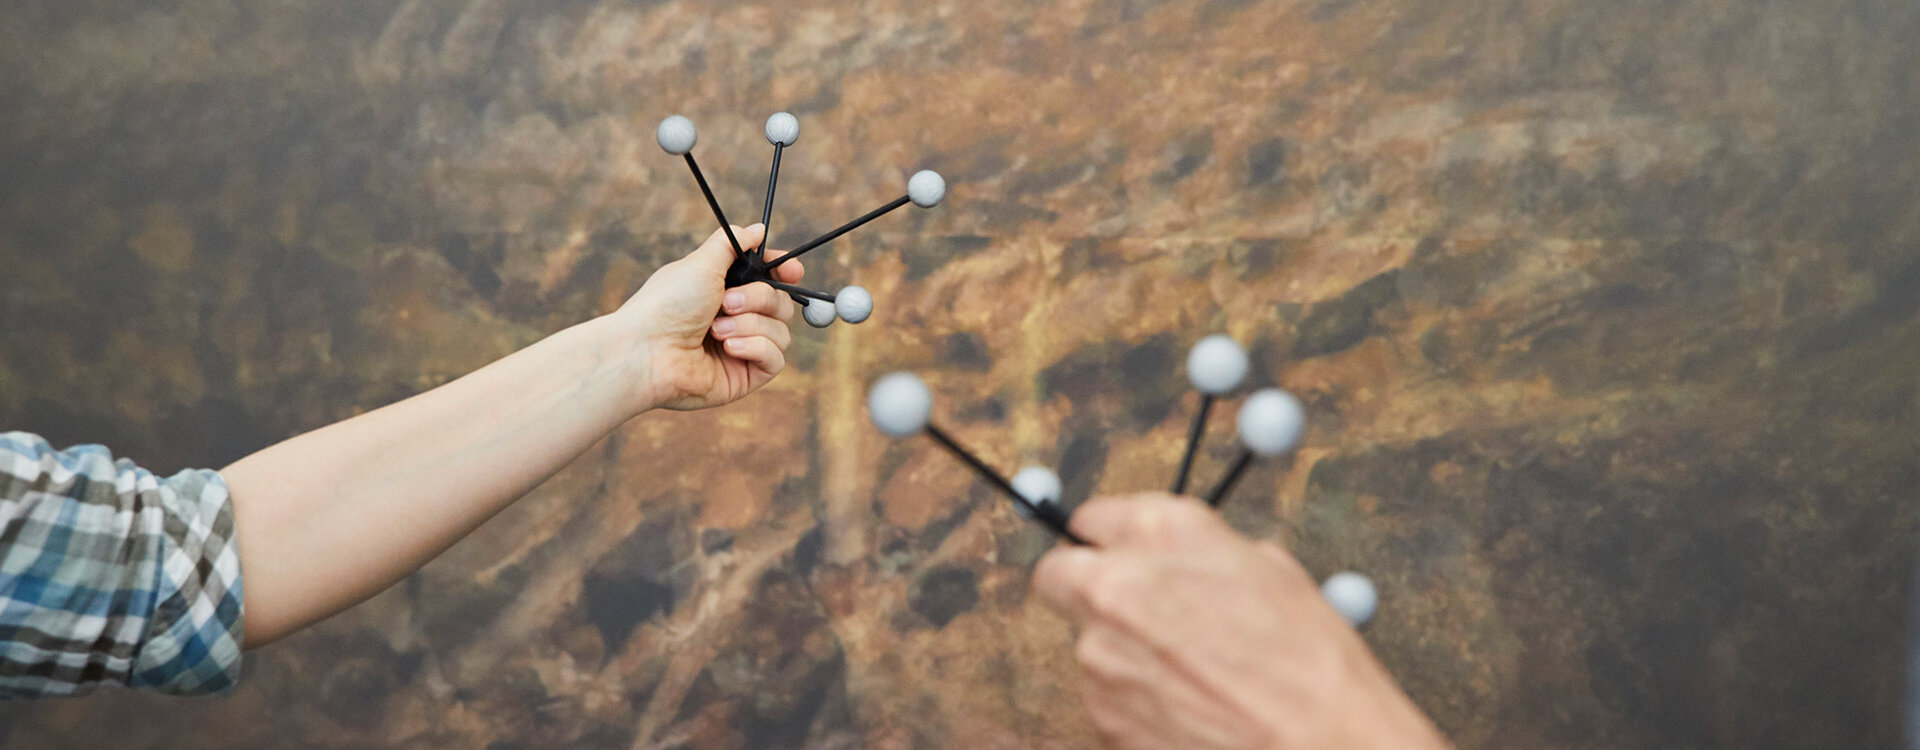 Molekülmodelle werden von zwei Händen hochgelalten